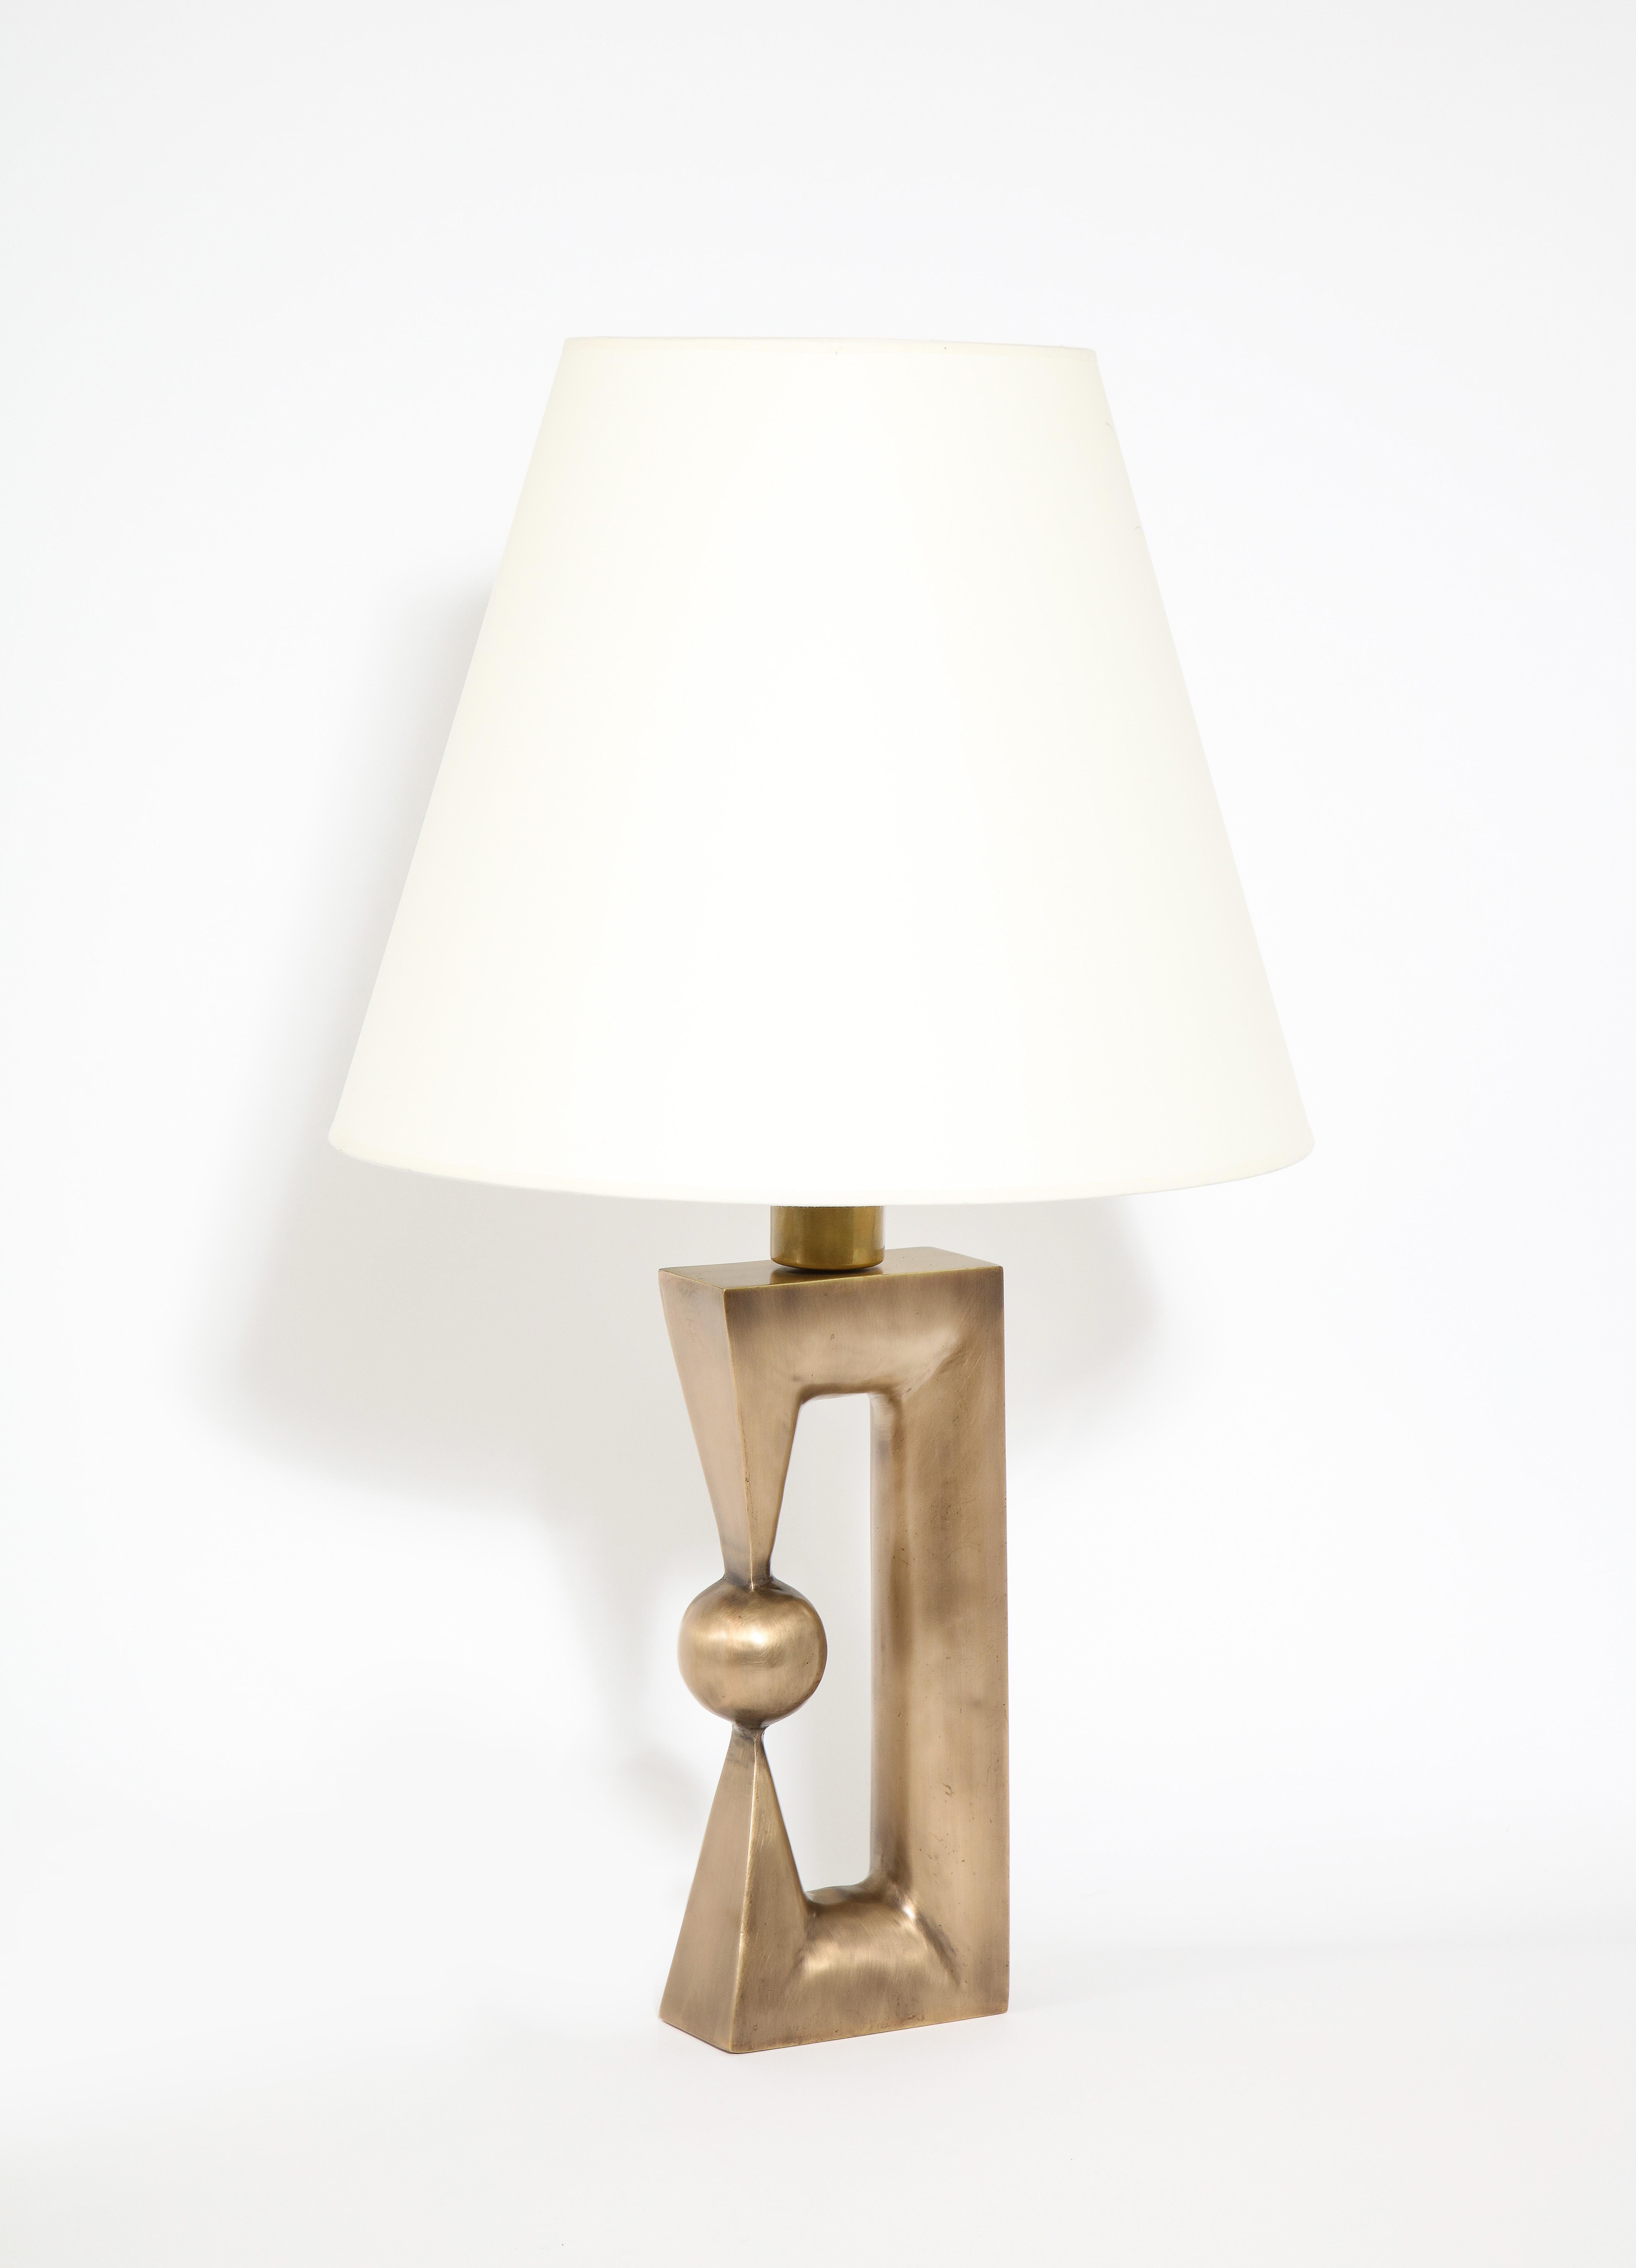 Une lampe de table en bronze fabriquée sur commande et inspirée d'une sculpture de Noguchi. Ces lampes sont fabriquées aux États-Unis et sont disponibles dans un large éventail de finitions personnalisées.

Dimensions de la base seulement : 6'' x 3